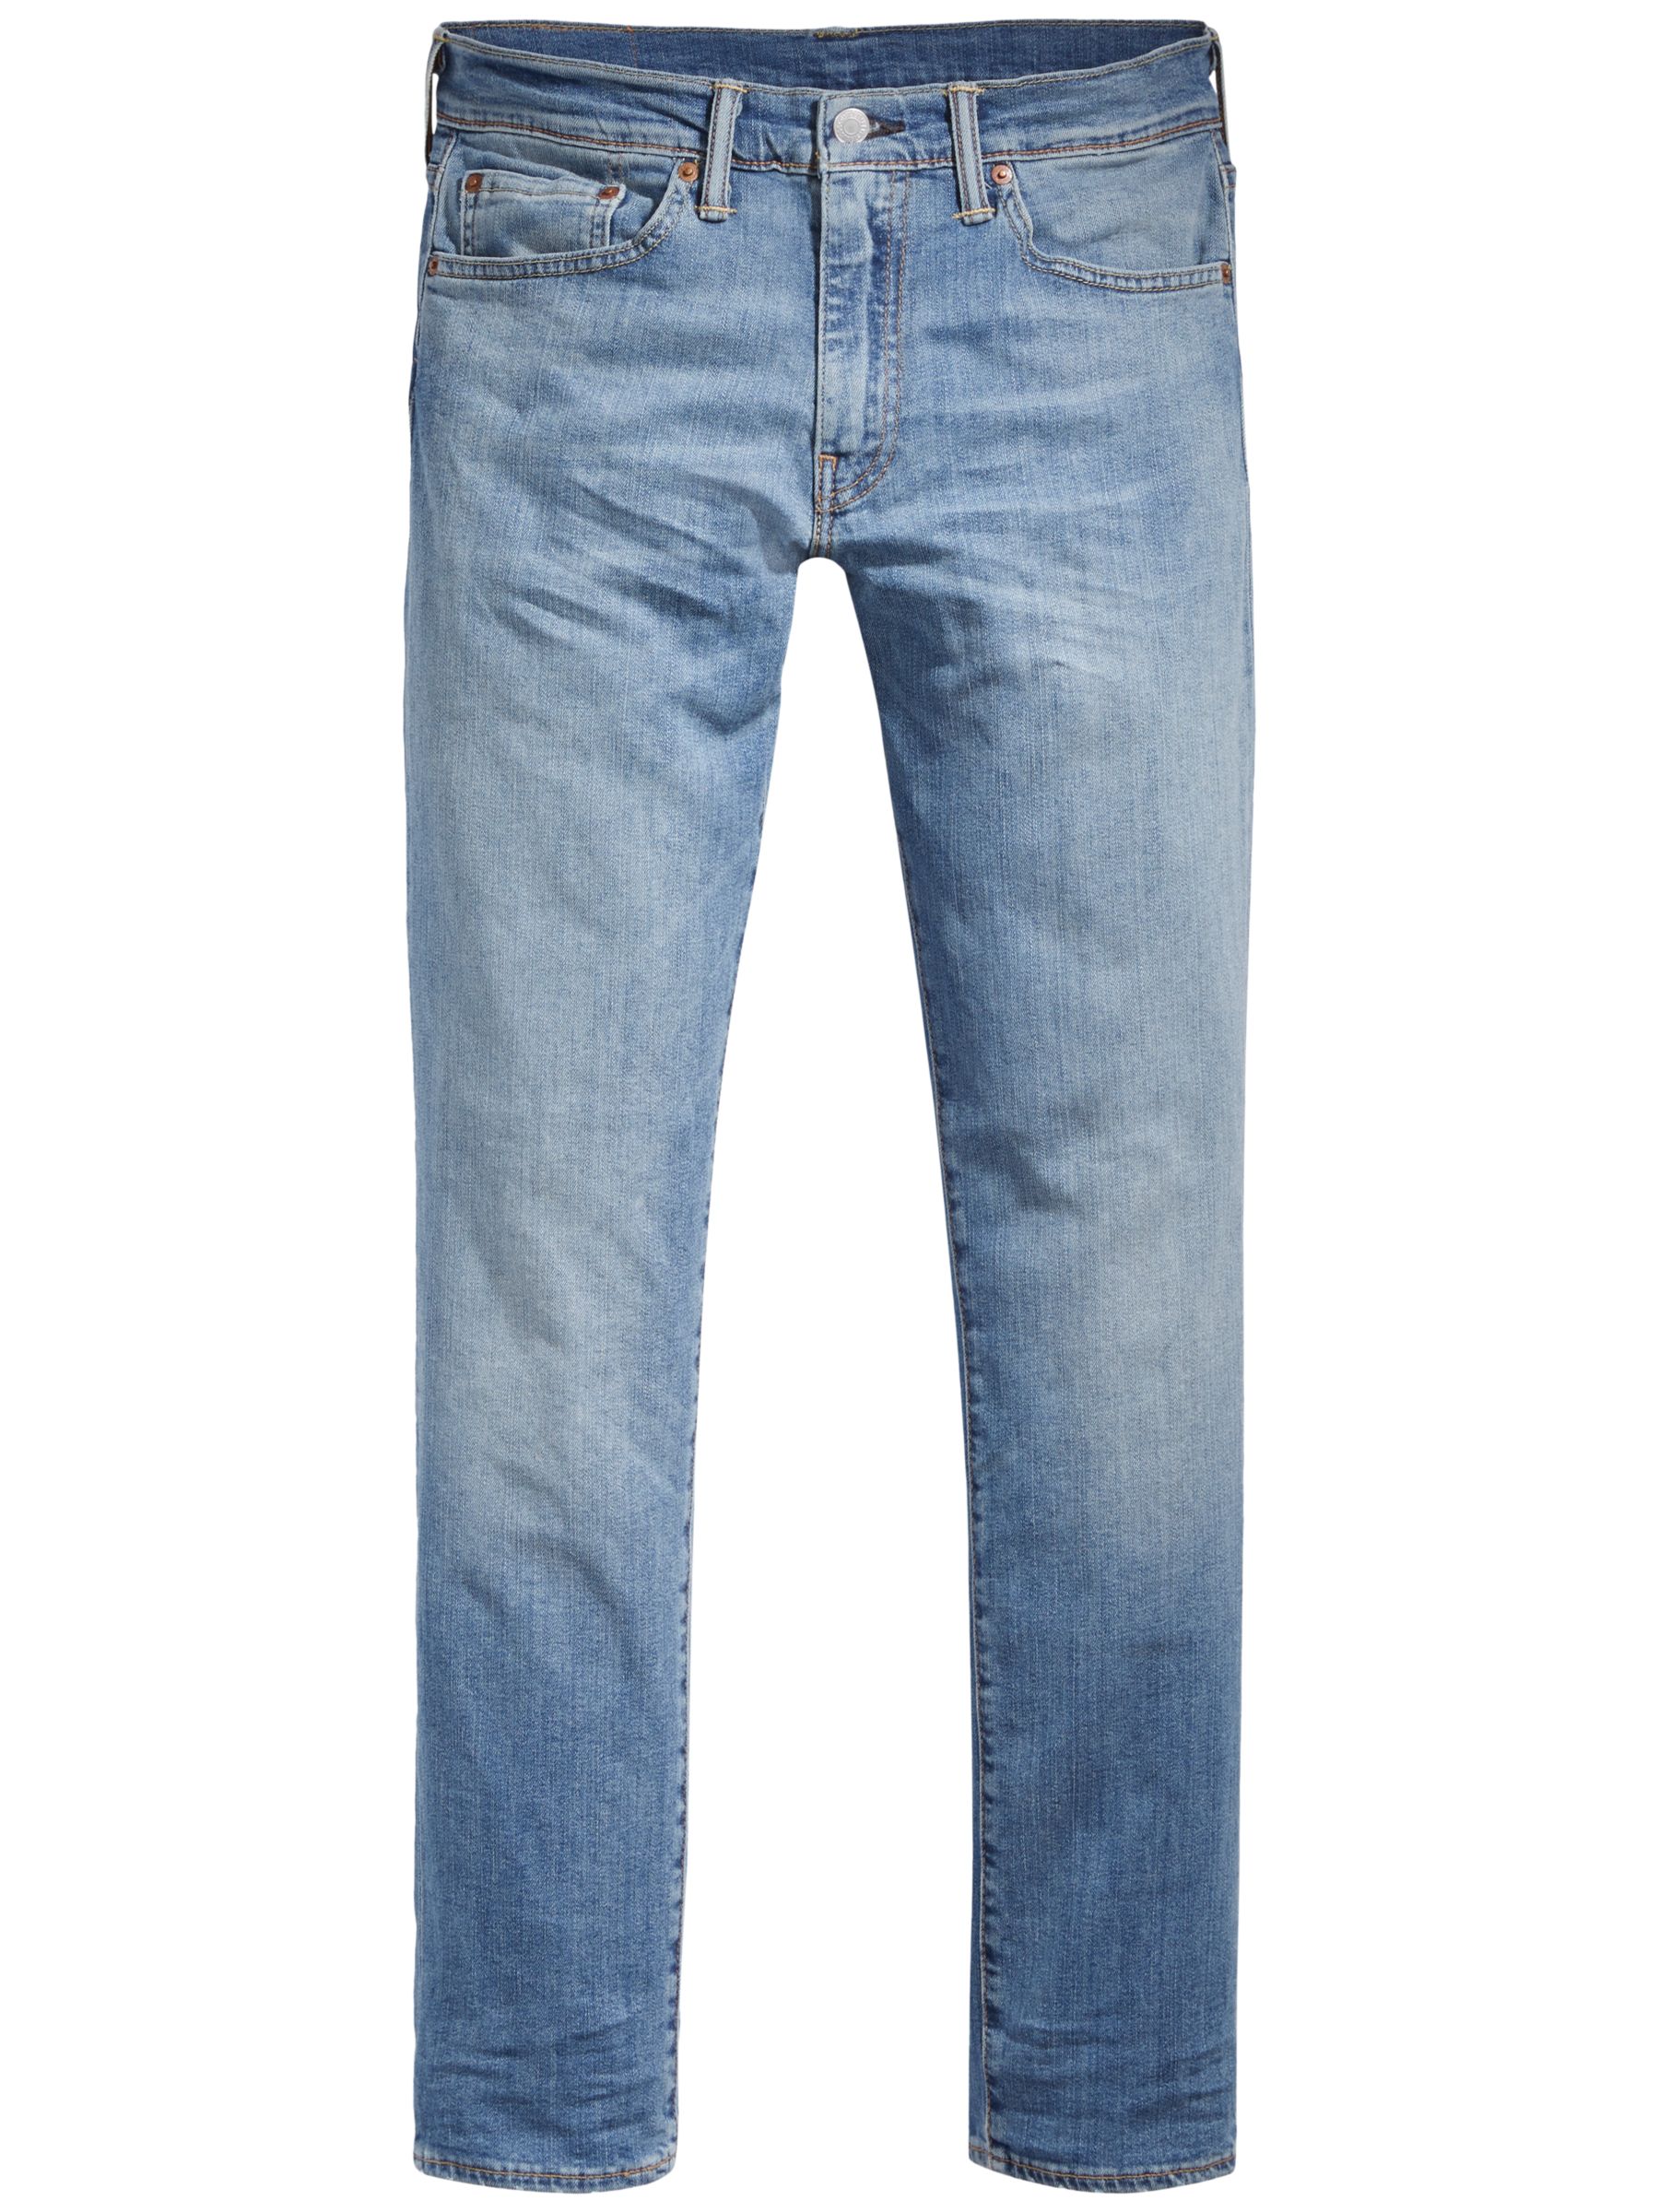 levis 511 slim fit jeans